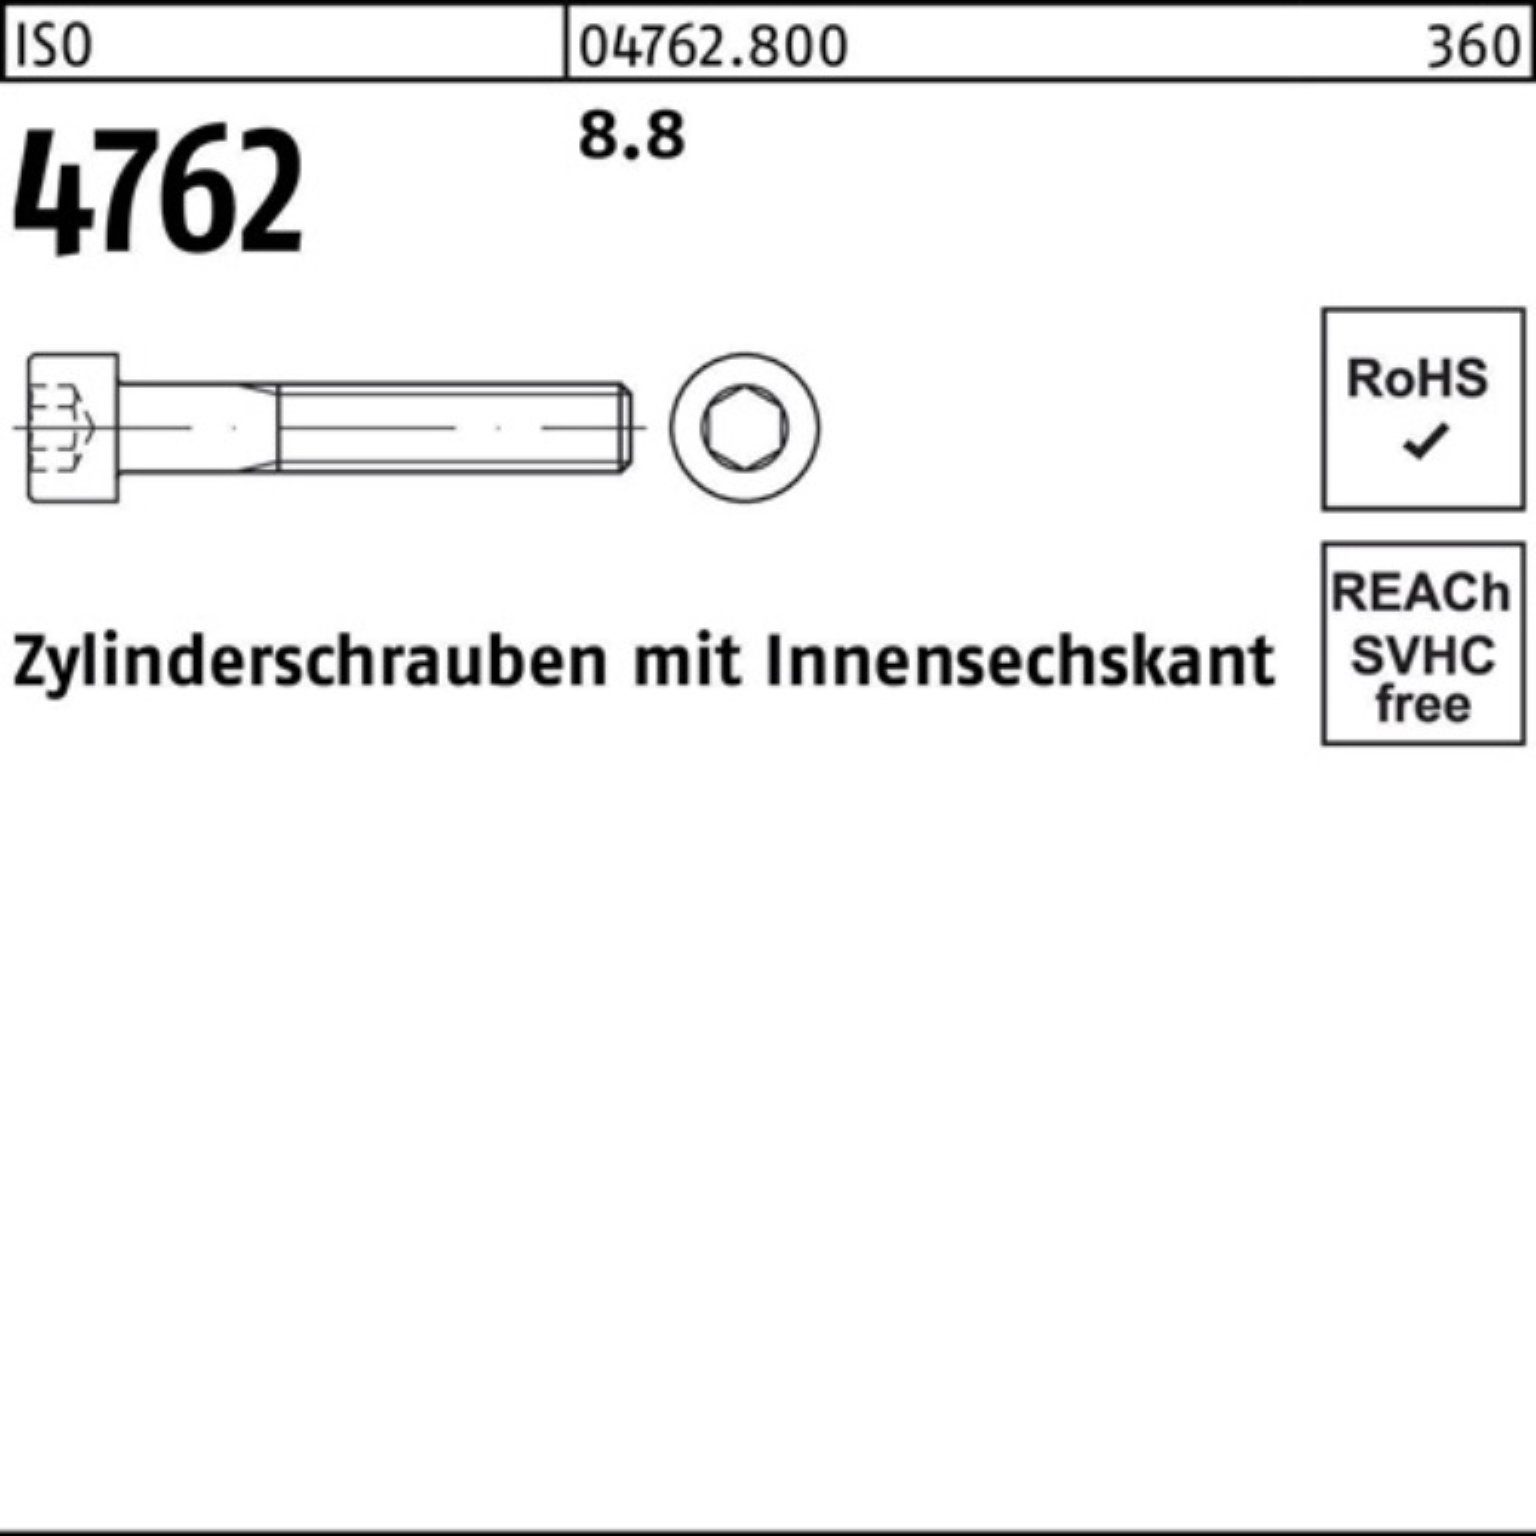 Zylinderschraube ISO 110 Zylinderschraube I 100er 4762 Stück 1 Pack Reyher Innen-6kt 8.8 M36x